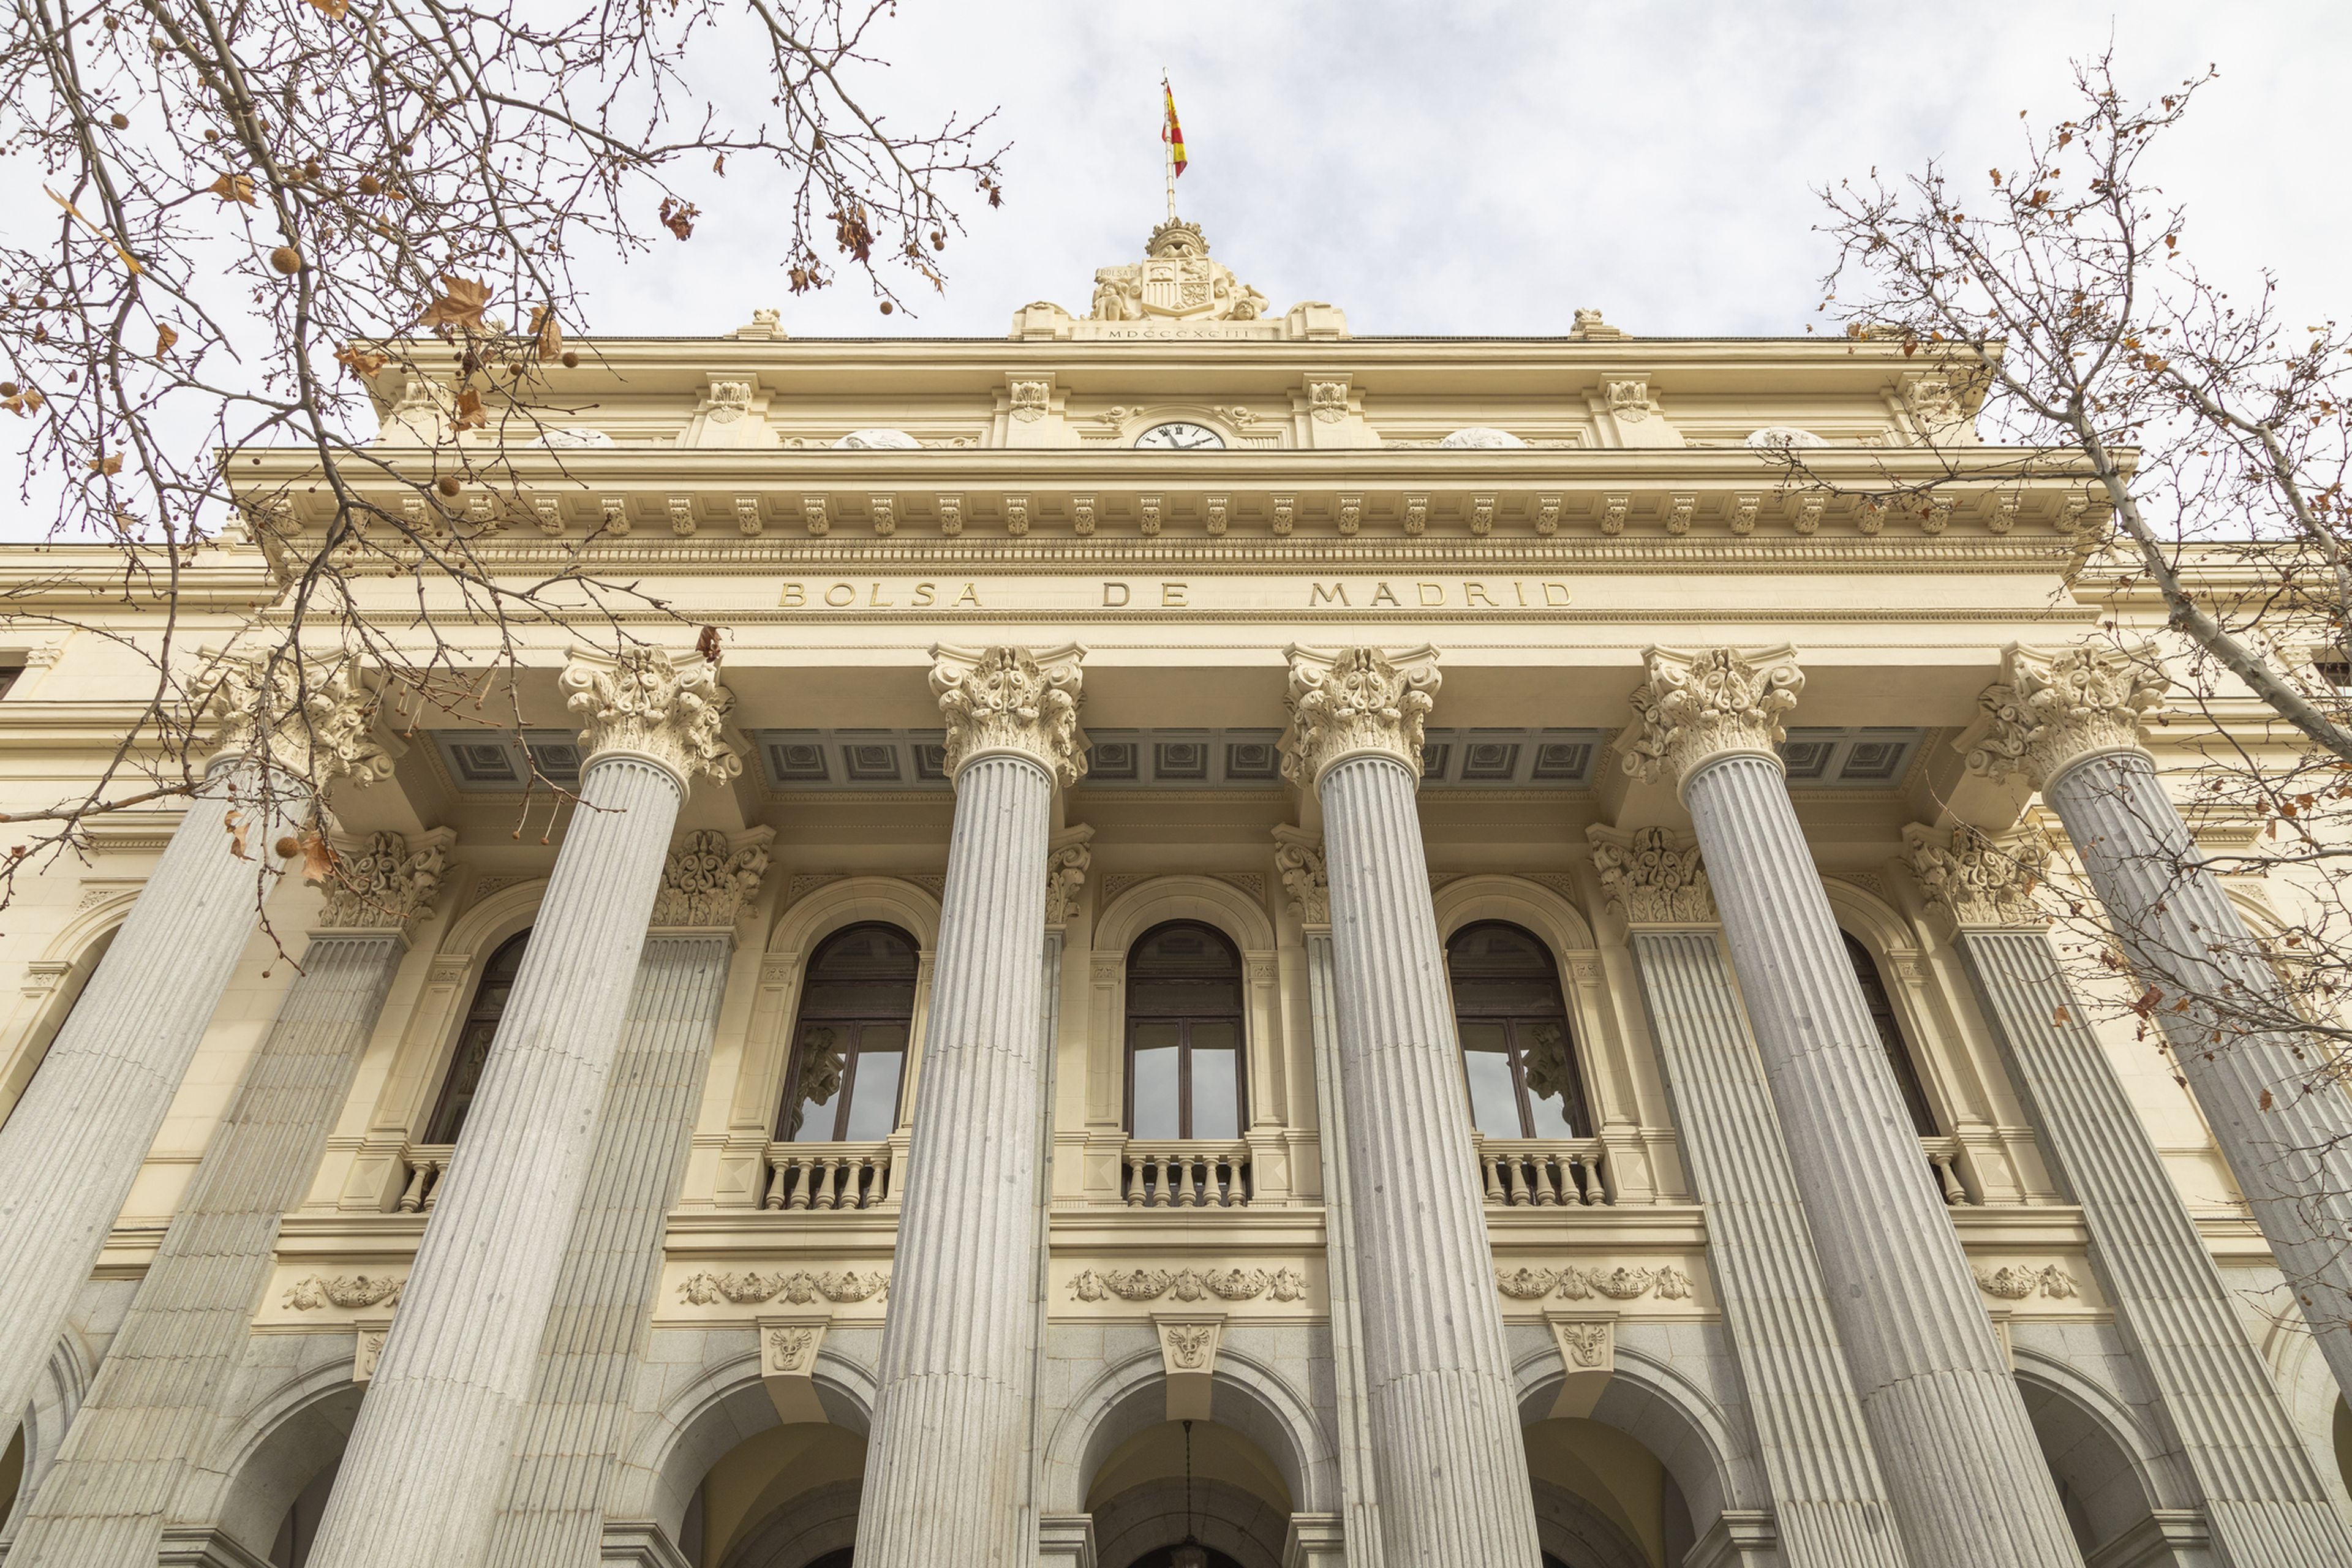 La Bolsa de Madrid, fundada en 1831, es el principal mercado de valores de España.